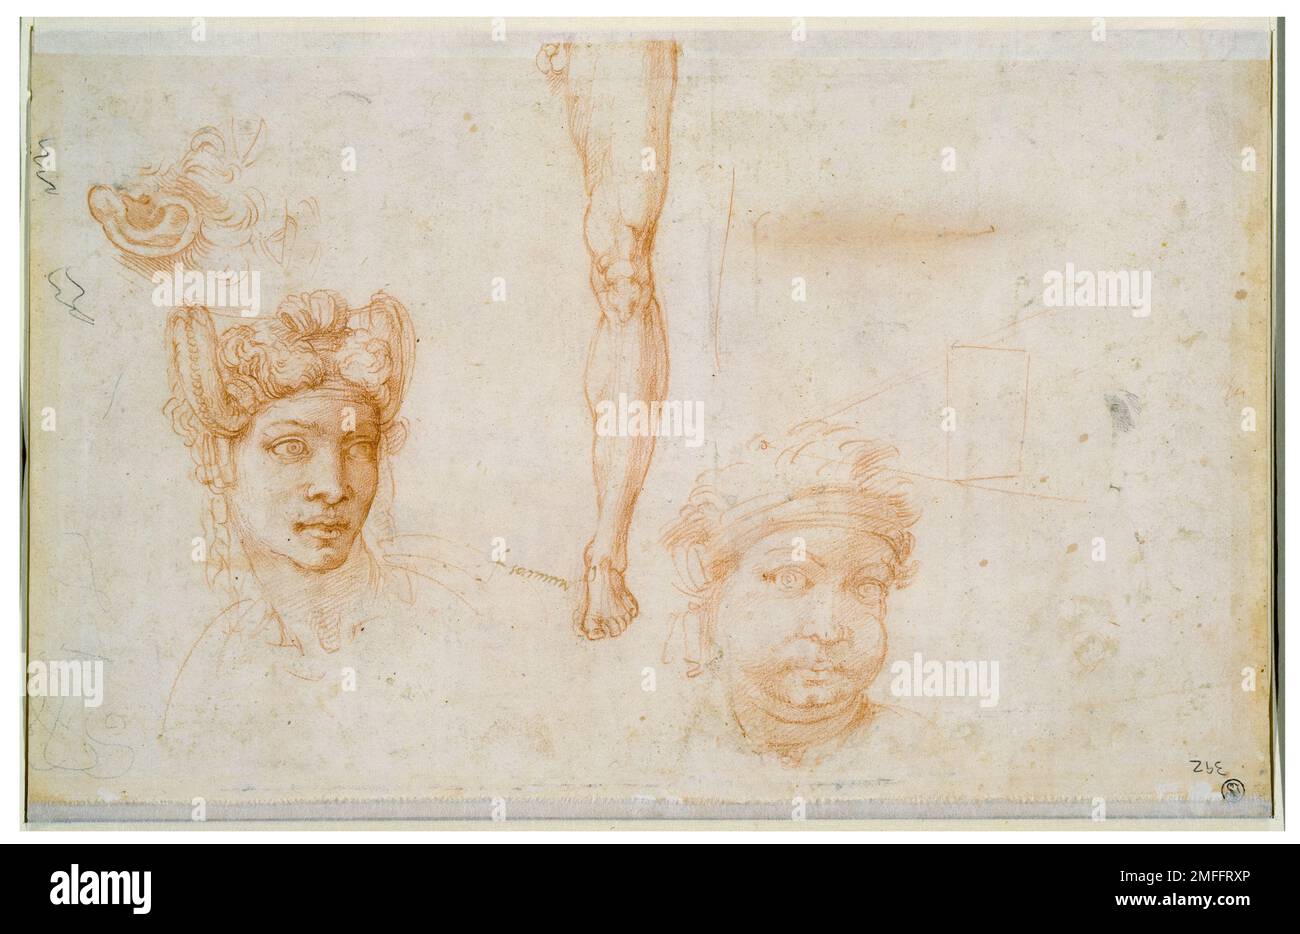 Michelangelo Buonarroti und Workshop, Ohr und zwei Augen, Frauenkopf mit geflochtenem Haar, Beinstudie, Kopf mit Verband, rote Kreide auf geripptem Papier gemalt, ca. 1525 Stockfoto